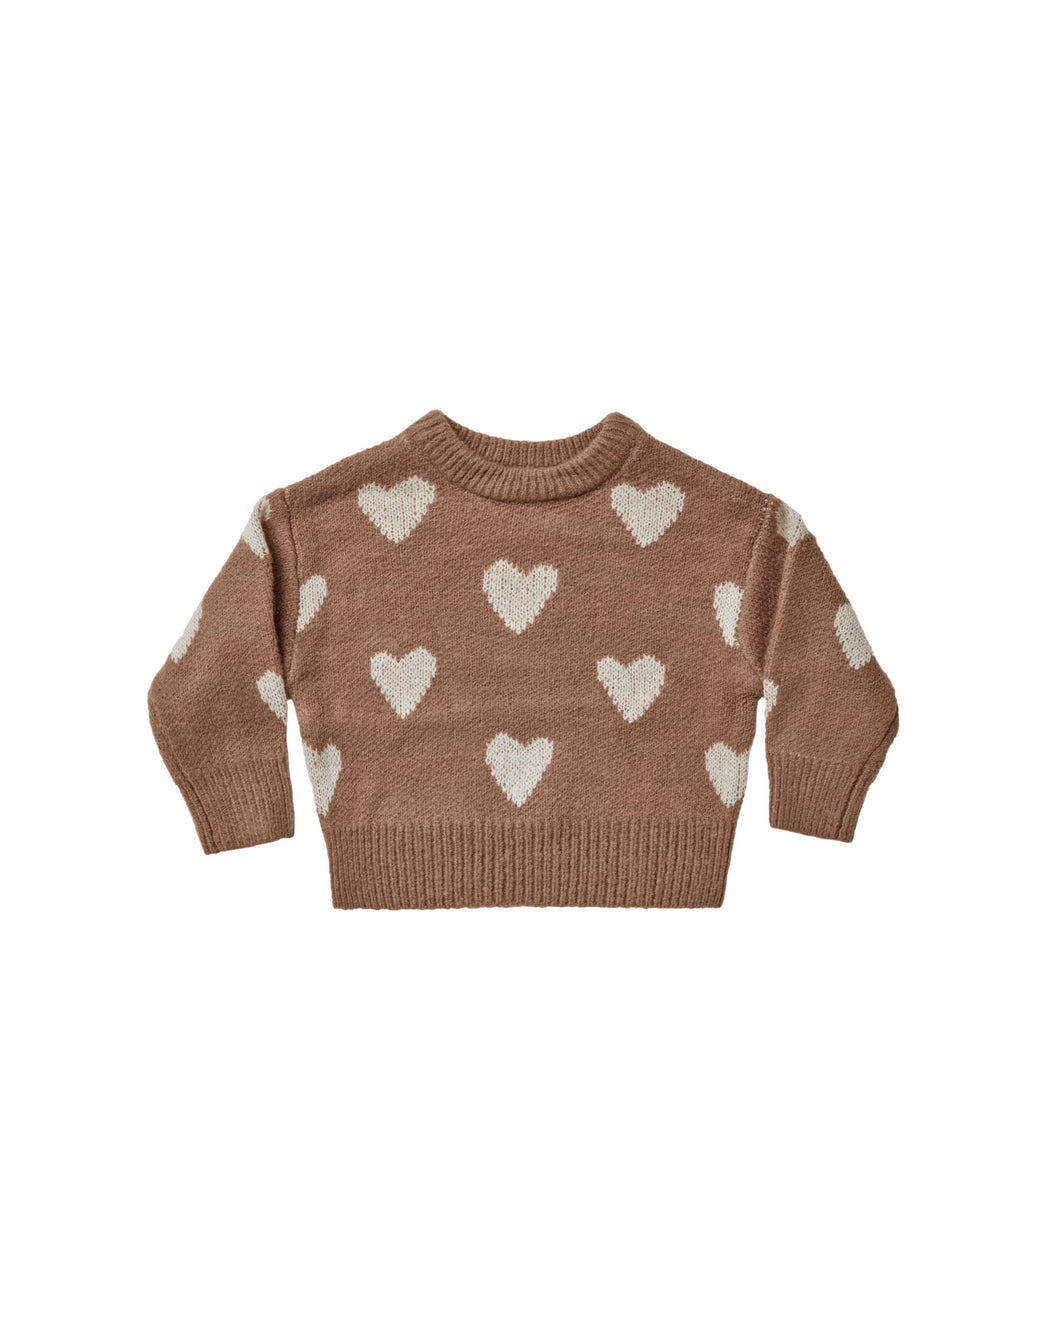 Rylee + Cru Knit Pullover - hearts - 18/24M, 4/5Y, 6/7Y